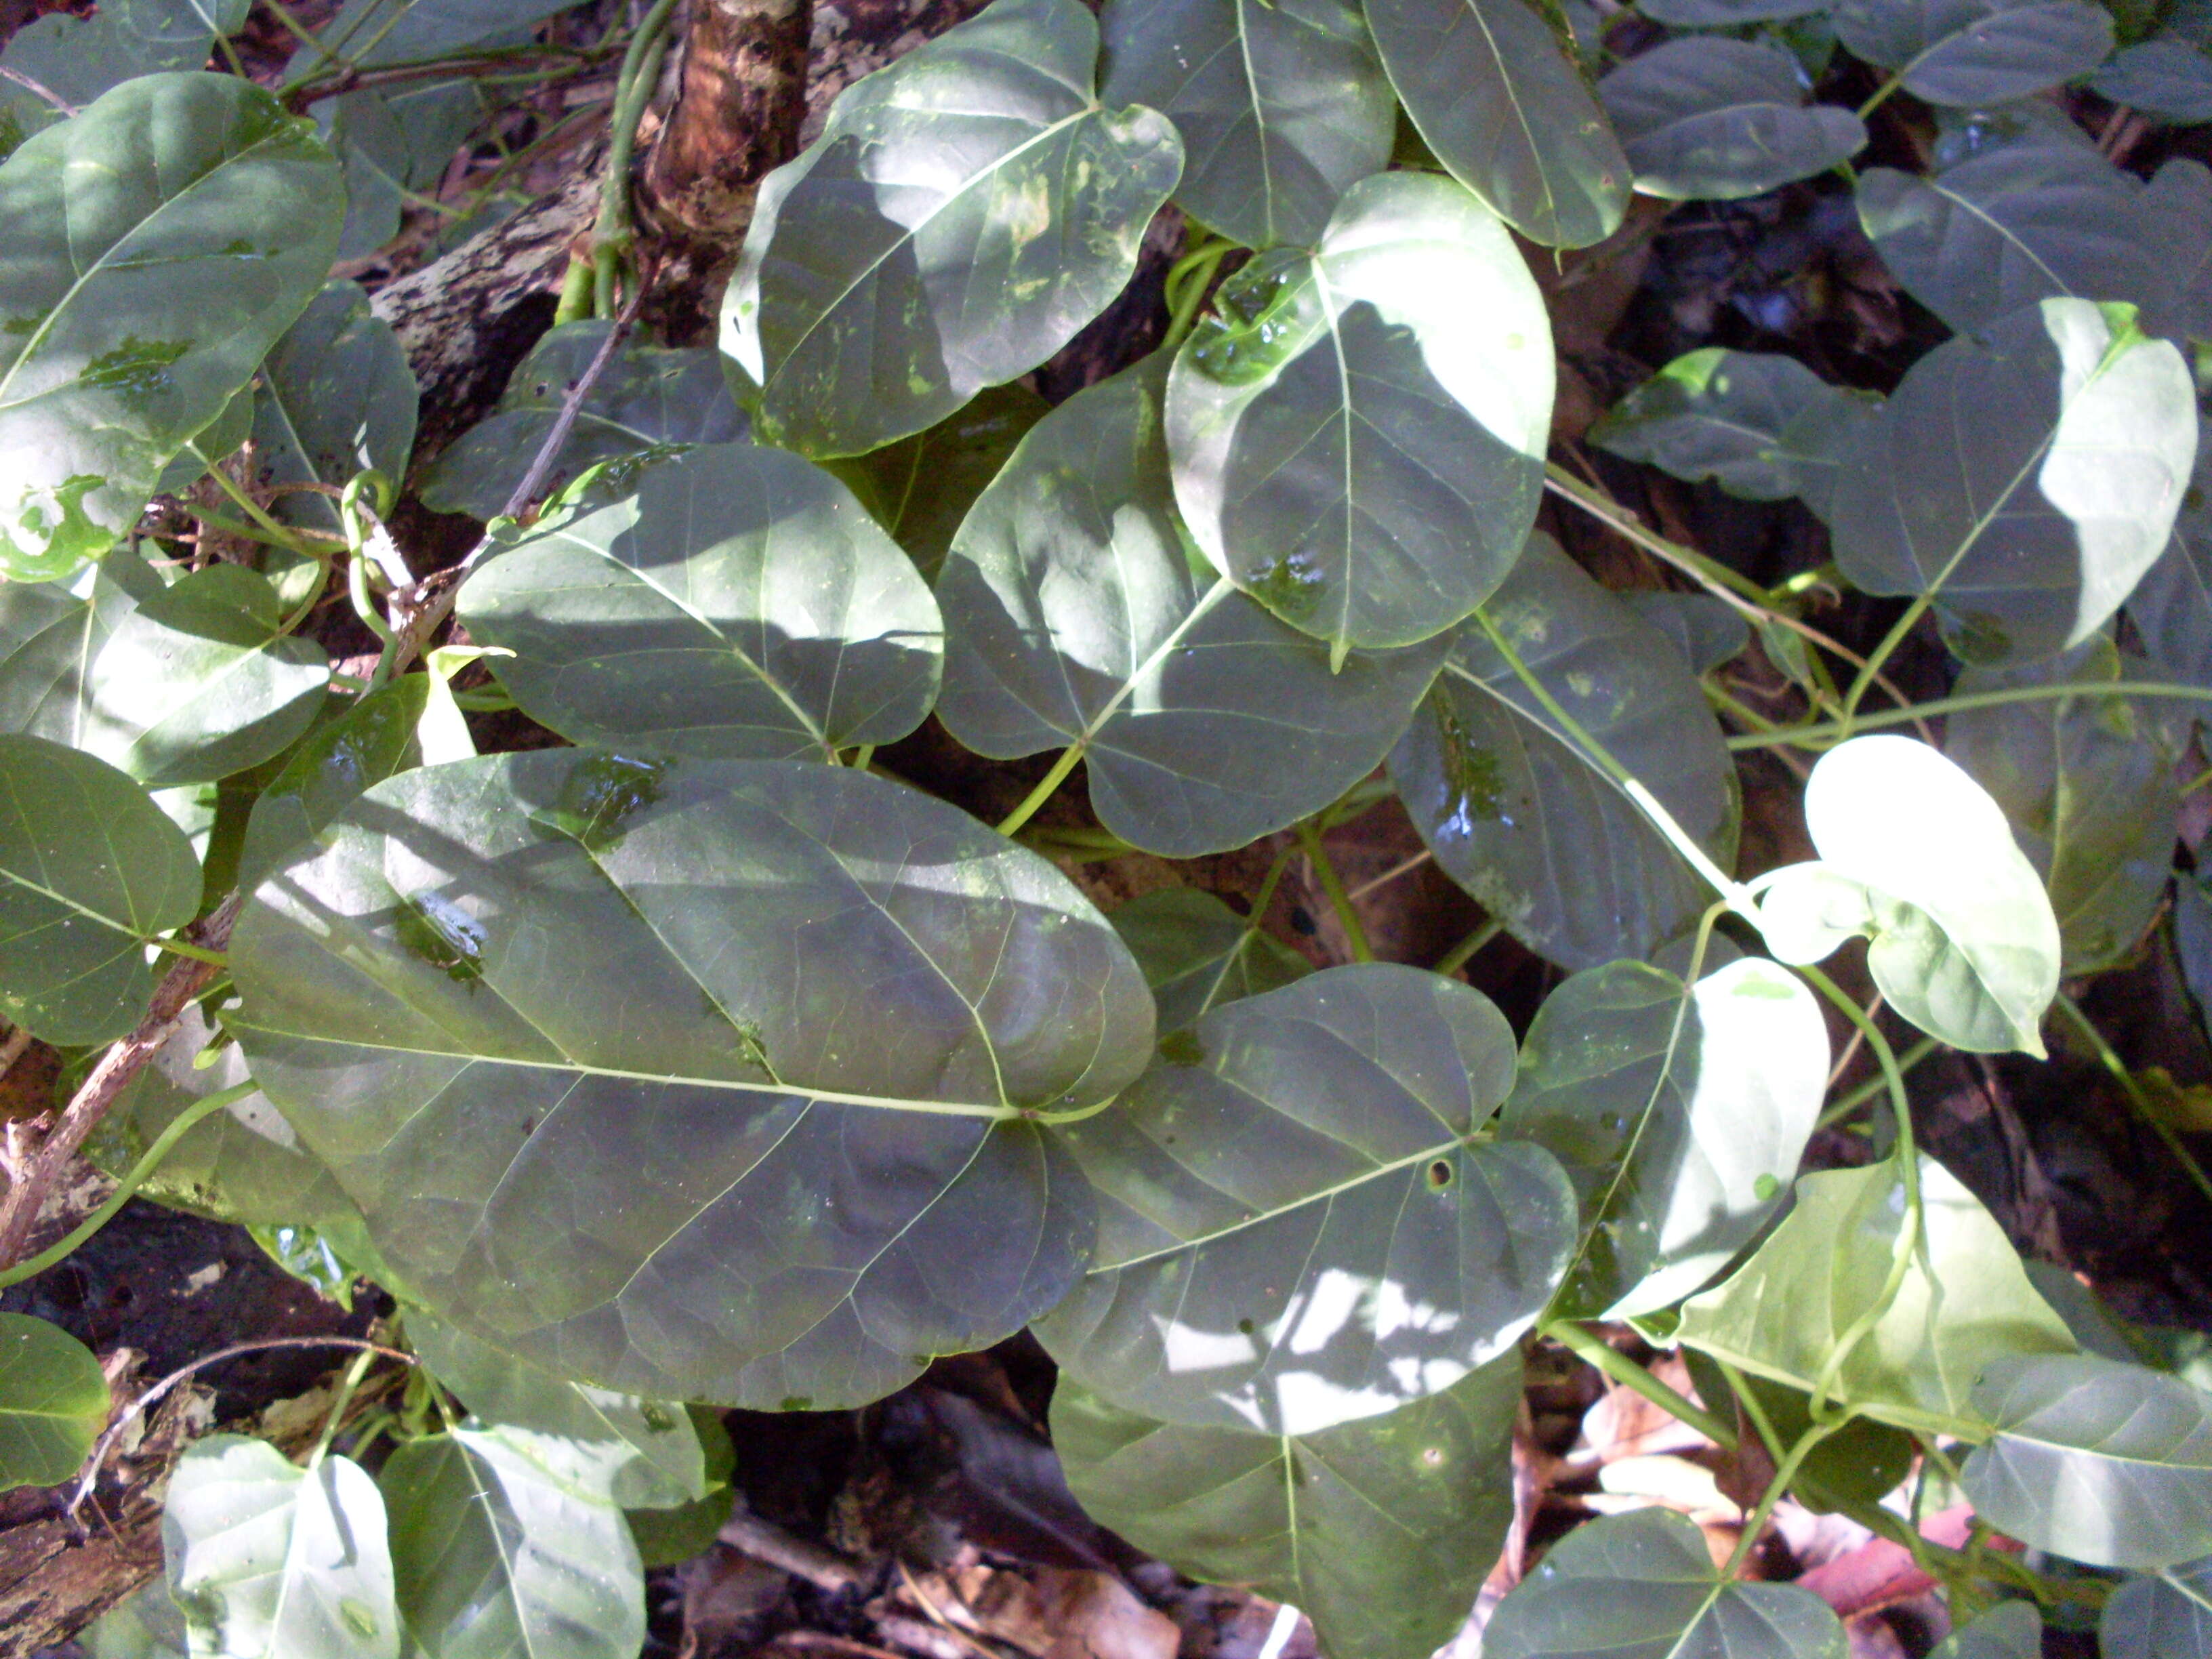 Image of Marsdenia rostrata R. Br.